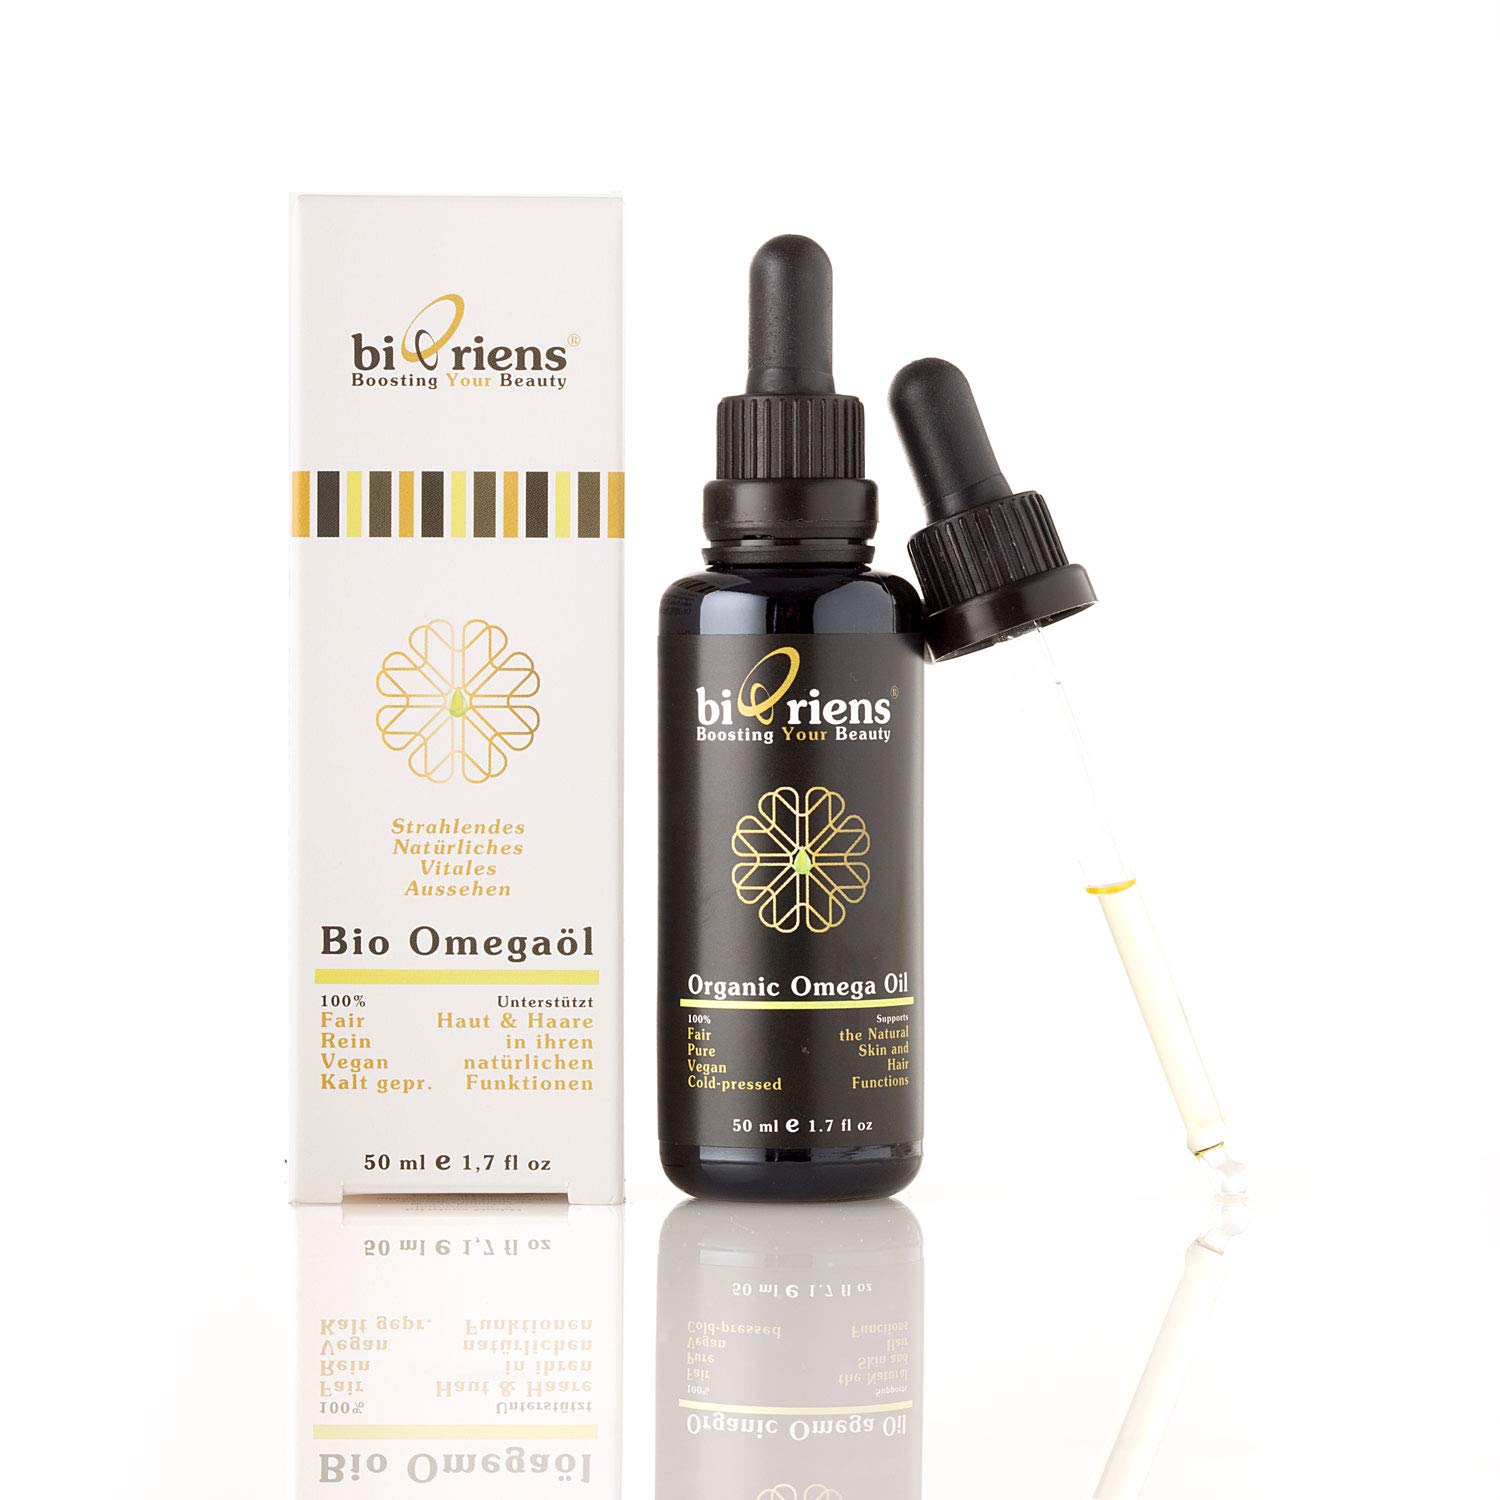 Bio Omegaöl in Premium-Qualität. Anti-Aging Naturkosmetik für gesunde Haut und kräftige Haare von biOriens cosmetics: 100% Fair, Rein, Vegan und Kalt gepresst - 50 ml